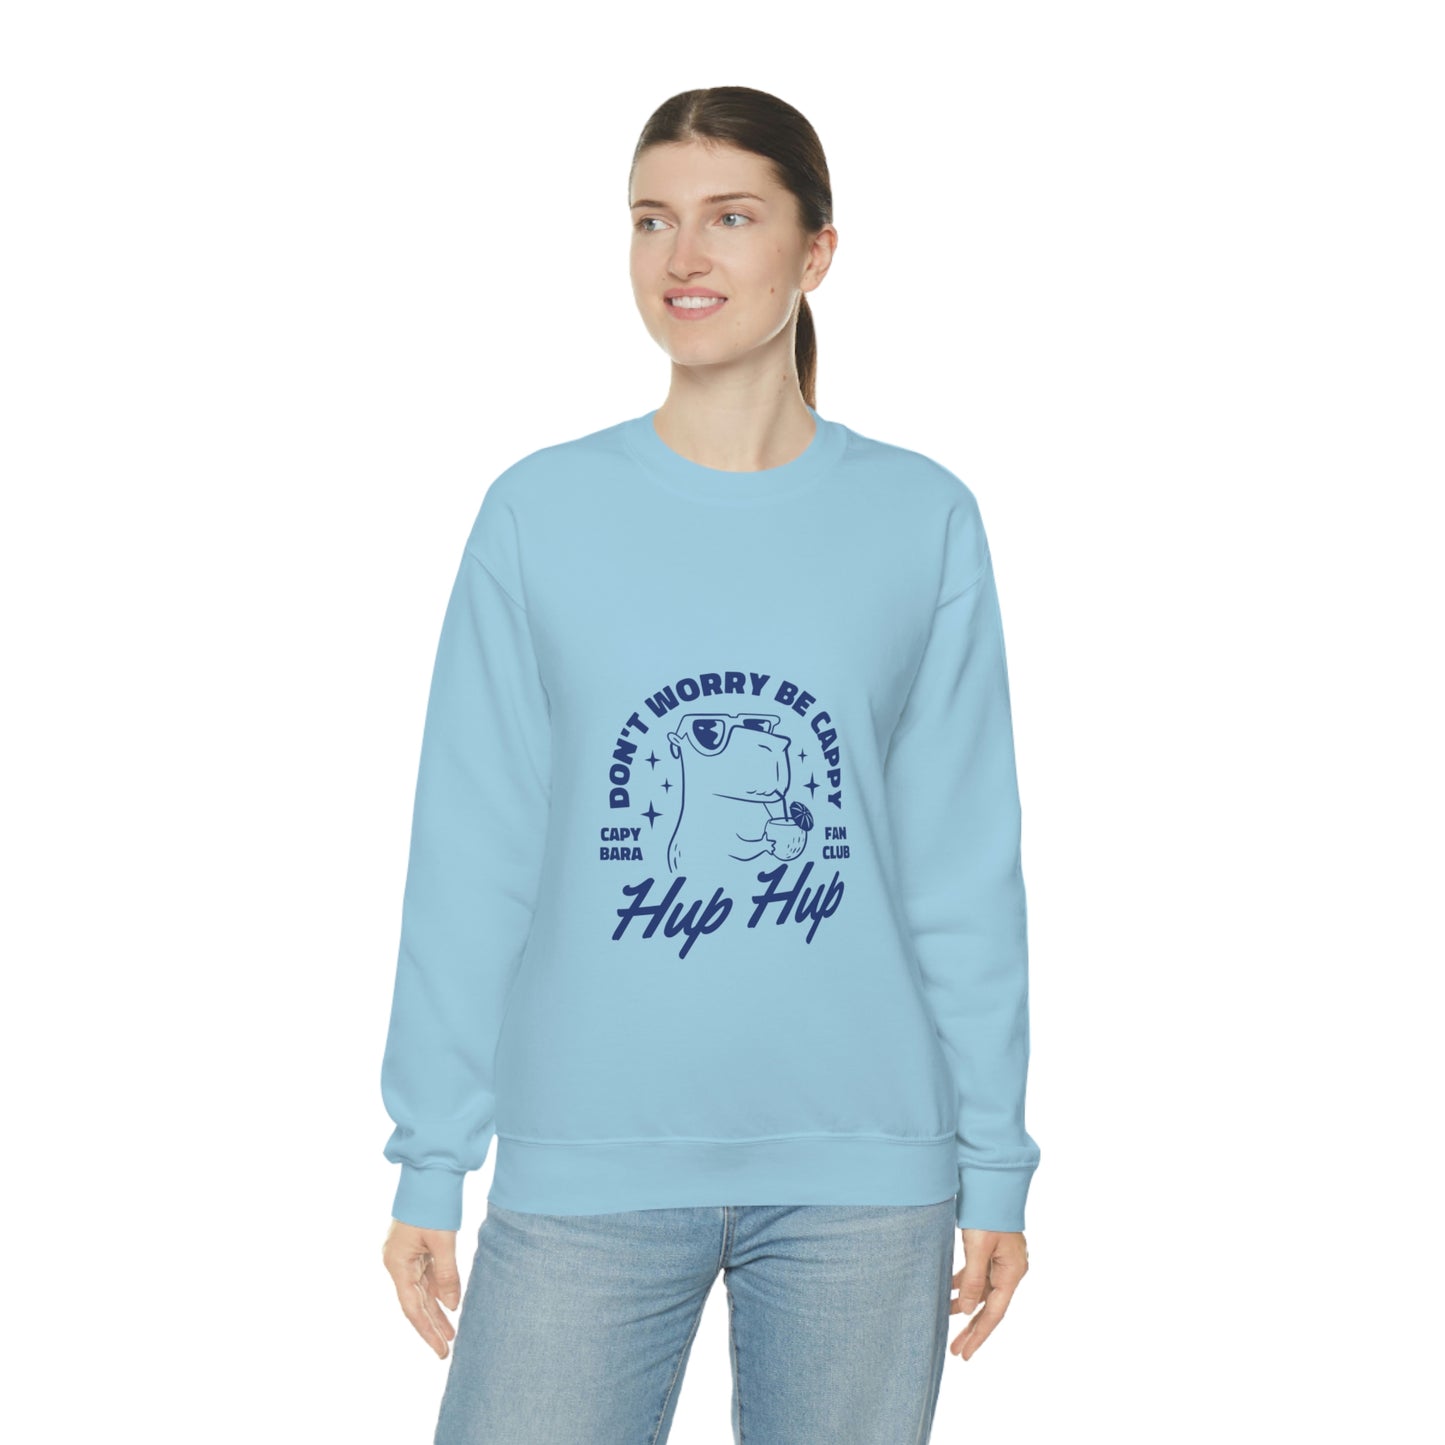 Hup Hup Capybara - Unisex Sweatshirt